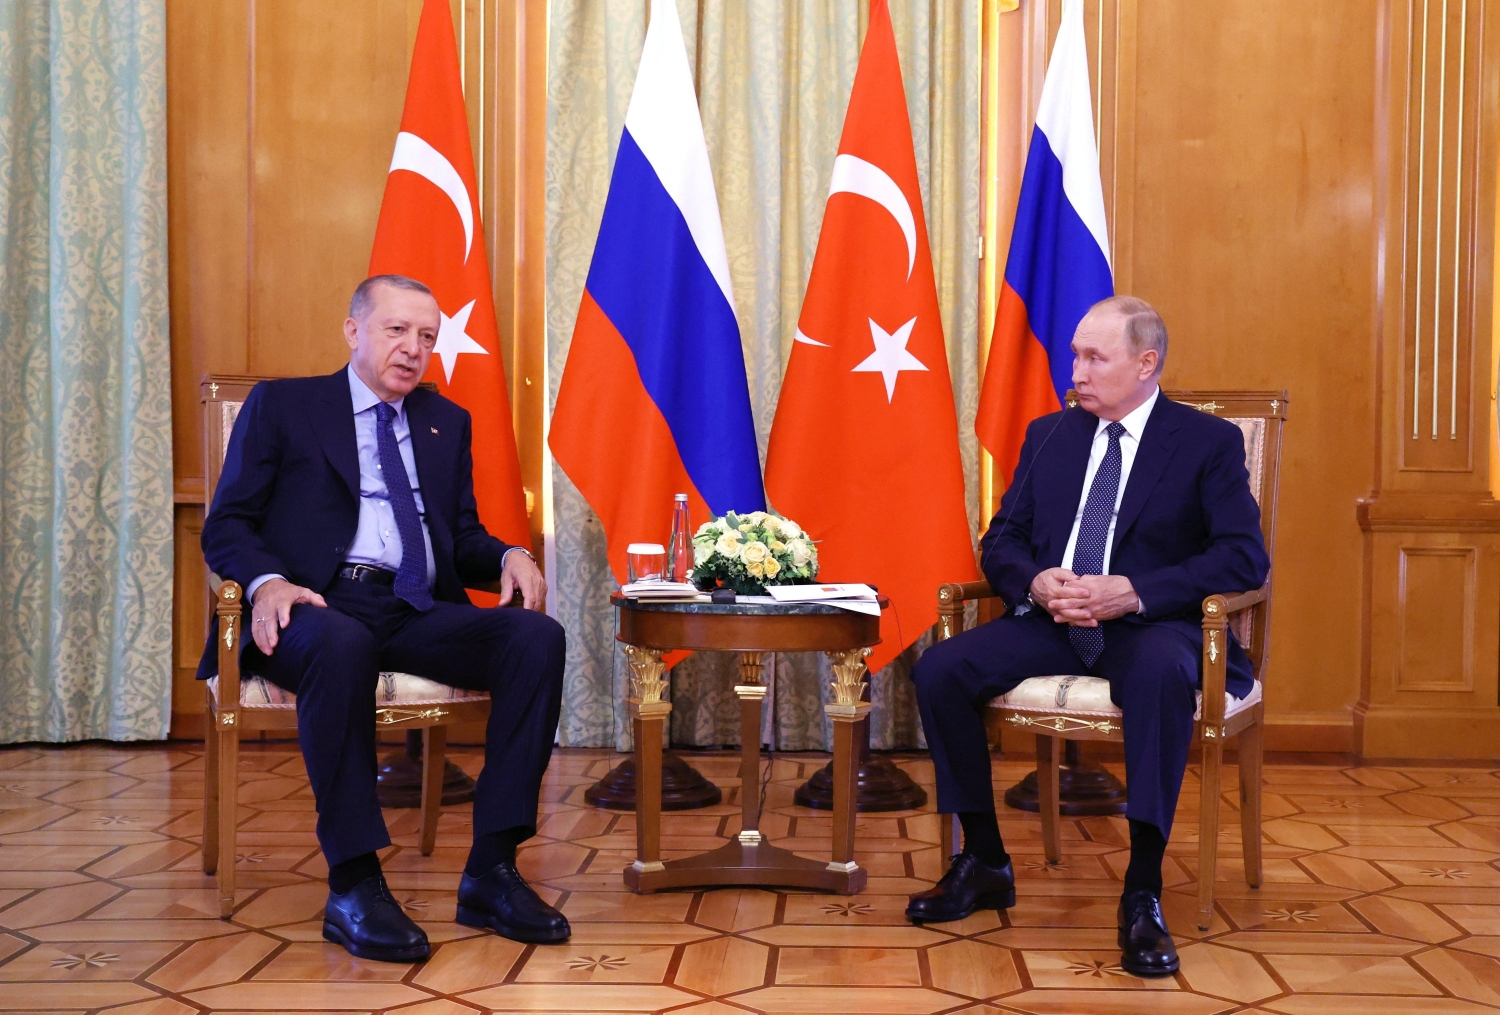 Kỷ nguyên mới giữa Nga và Thổ Nhĩ Kỳ sau khi ông Erdogan tái cử Tổng thống